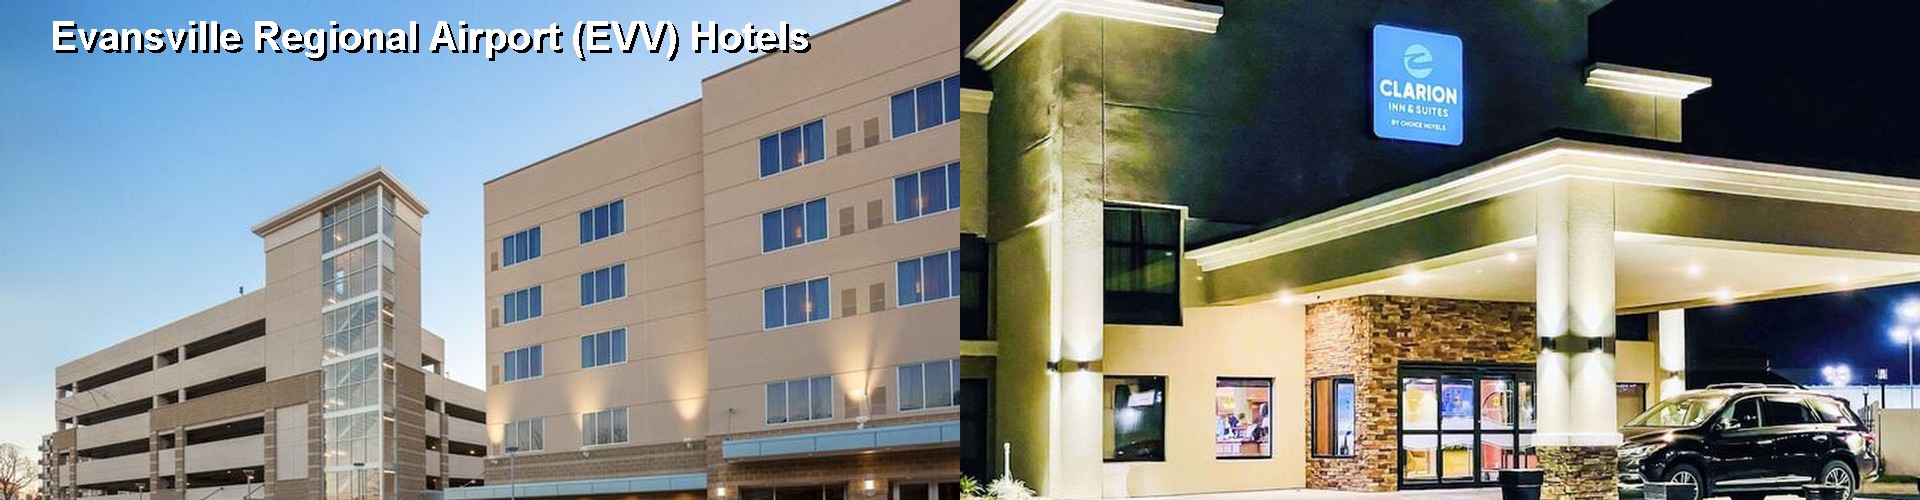 5 Best Hotels near Evansville Regional Airport (EVV)